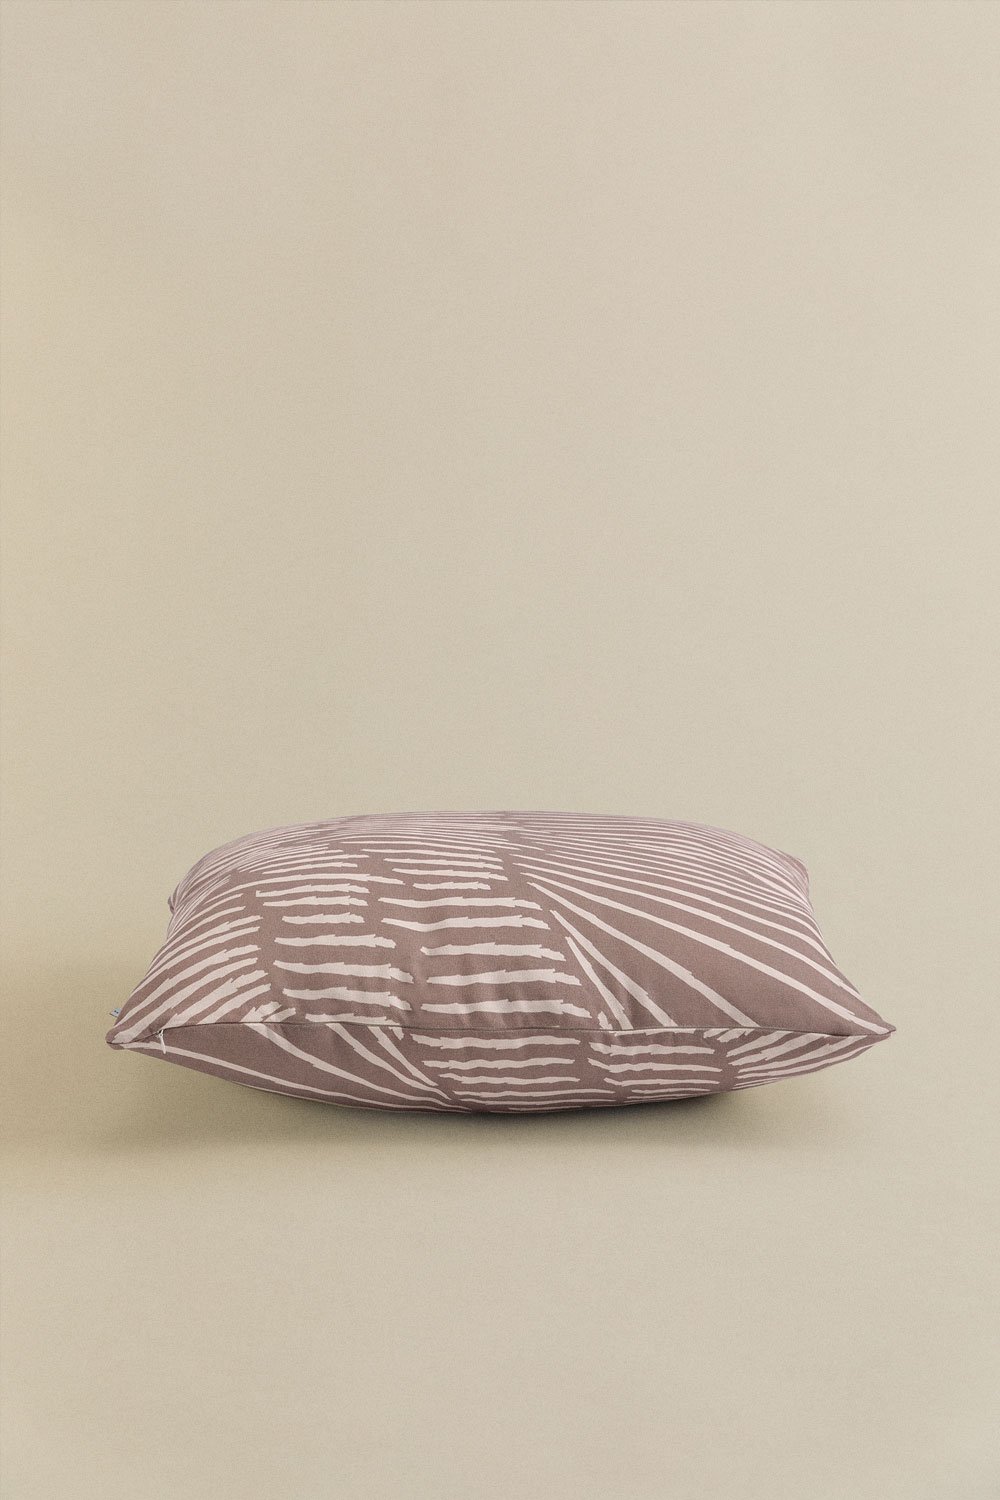 Housse de coussin carrée en coton (60x60cm) Ubongo Style, image de la galerie 2